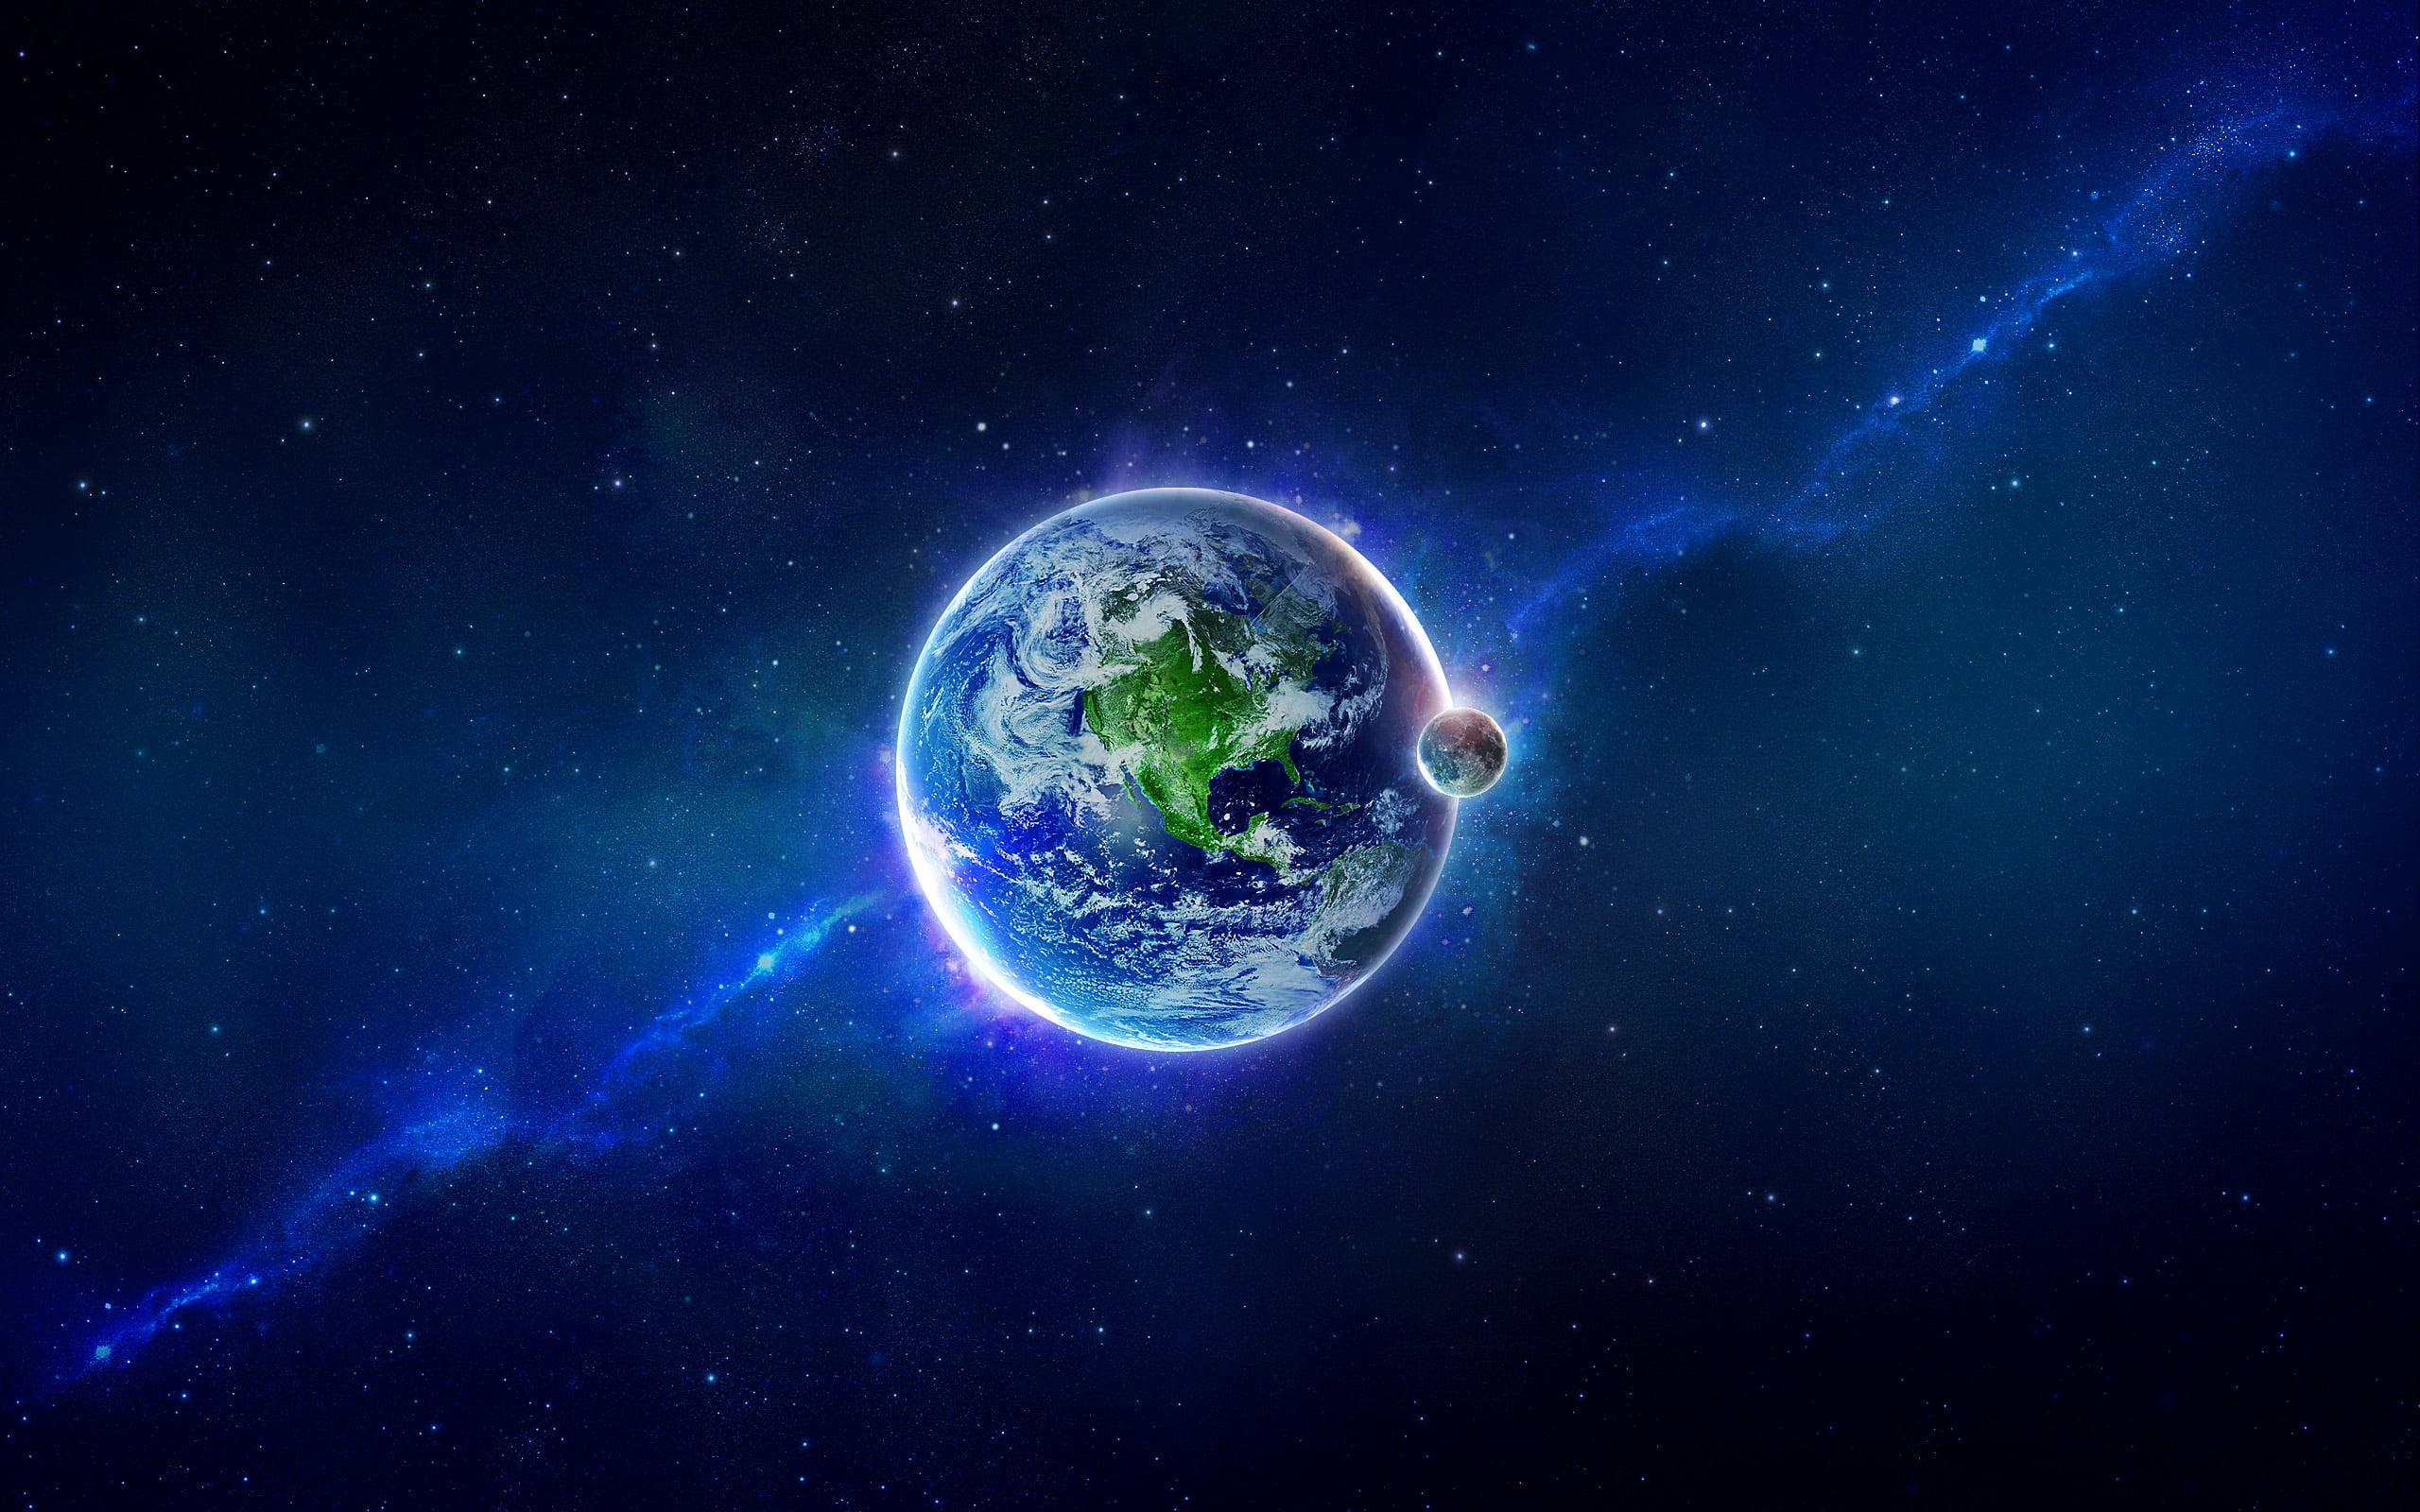 محور دوران الأرض حول نفسها يتغير!! | مجلة نقطة العلمية